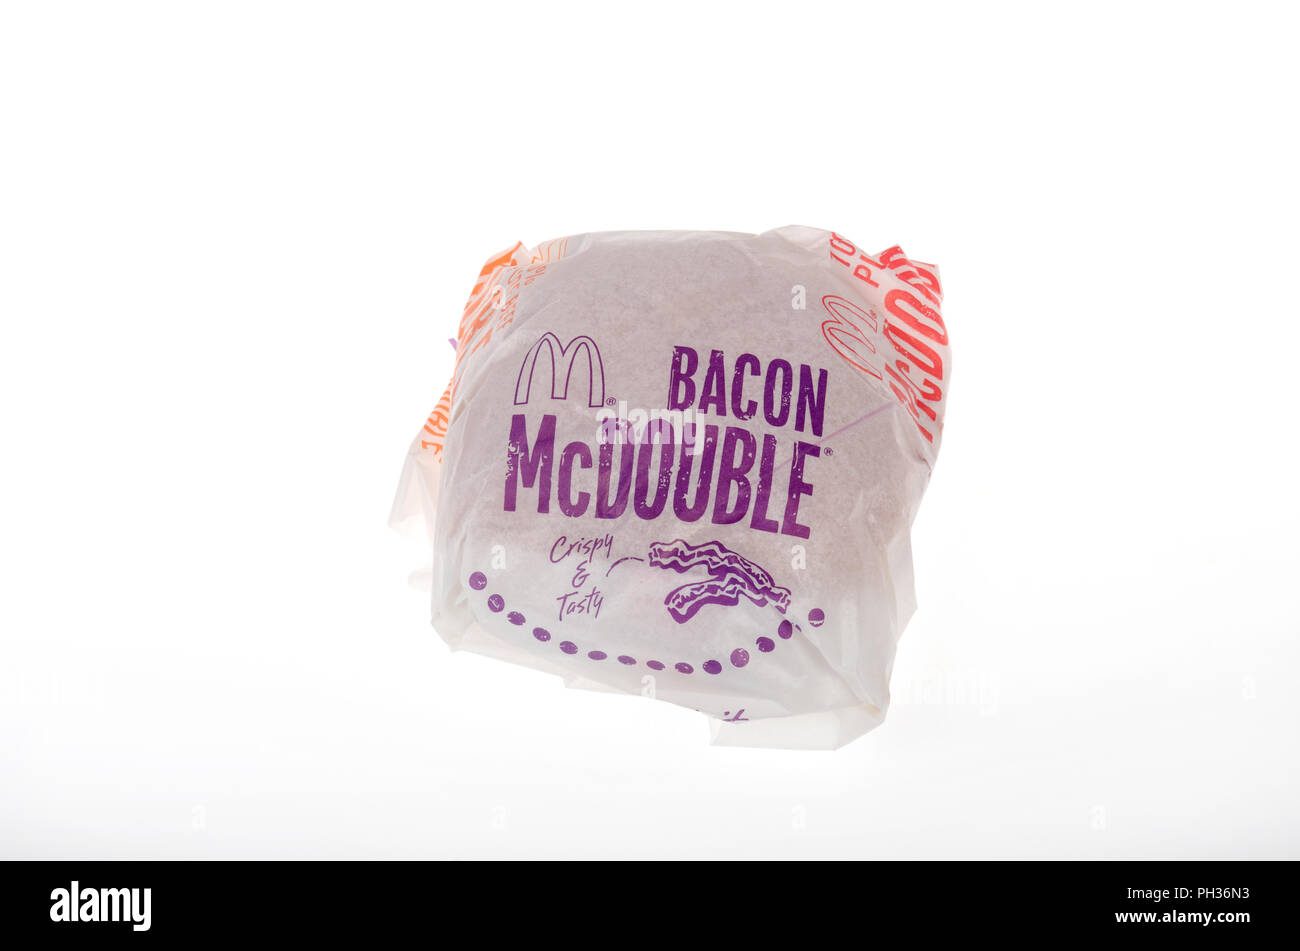 McDonald's Bacon McDouble cheeseburger in wrapper Stock Photo